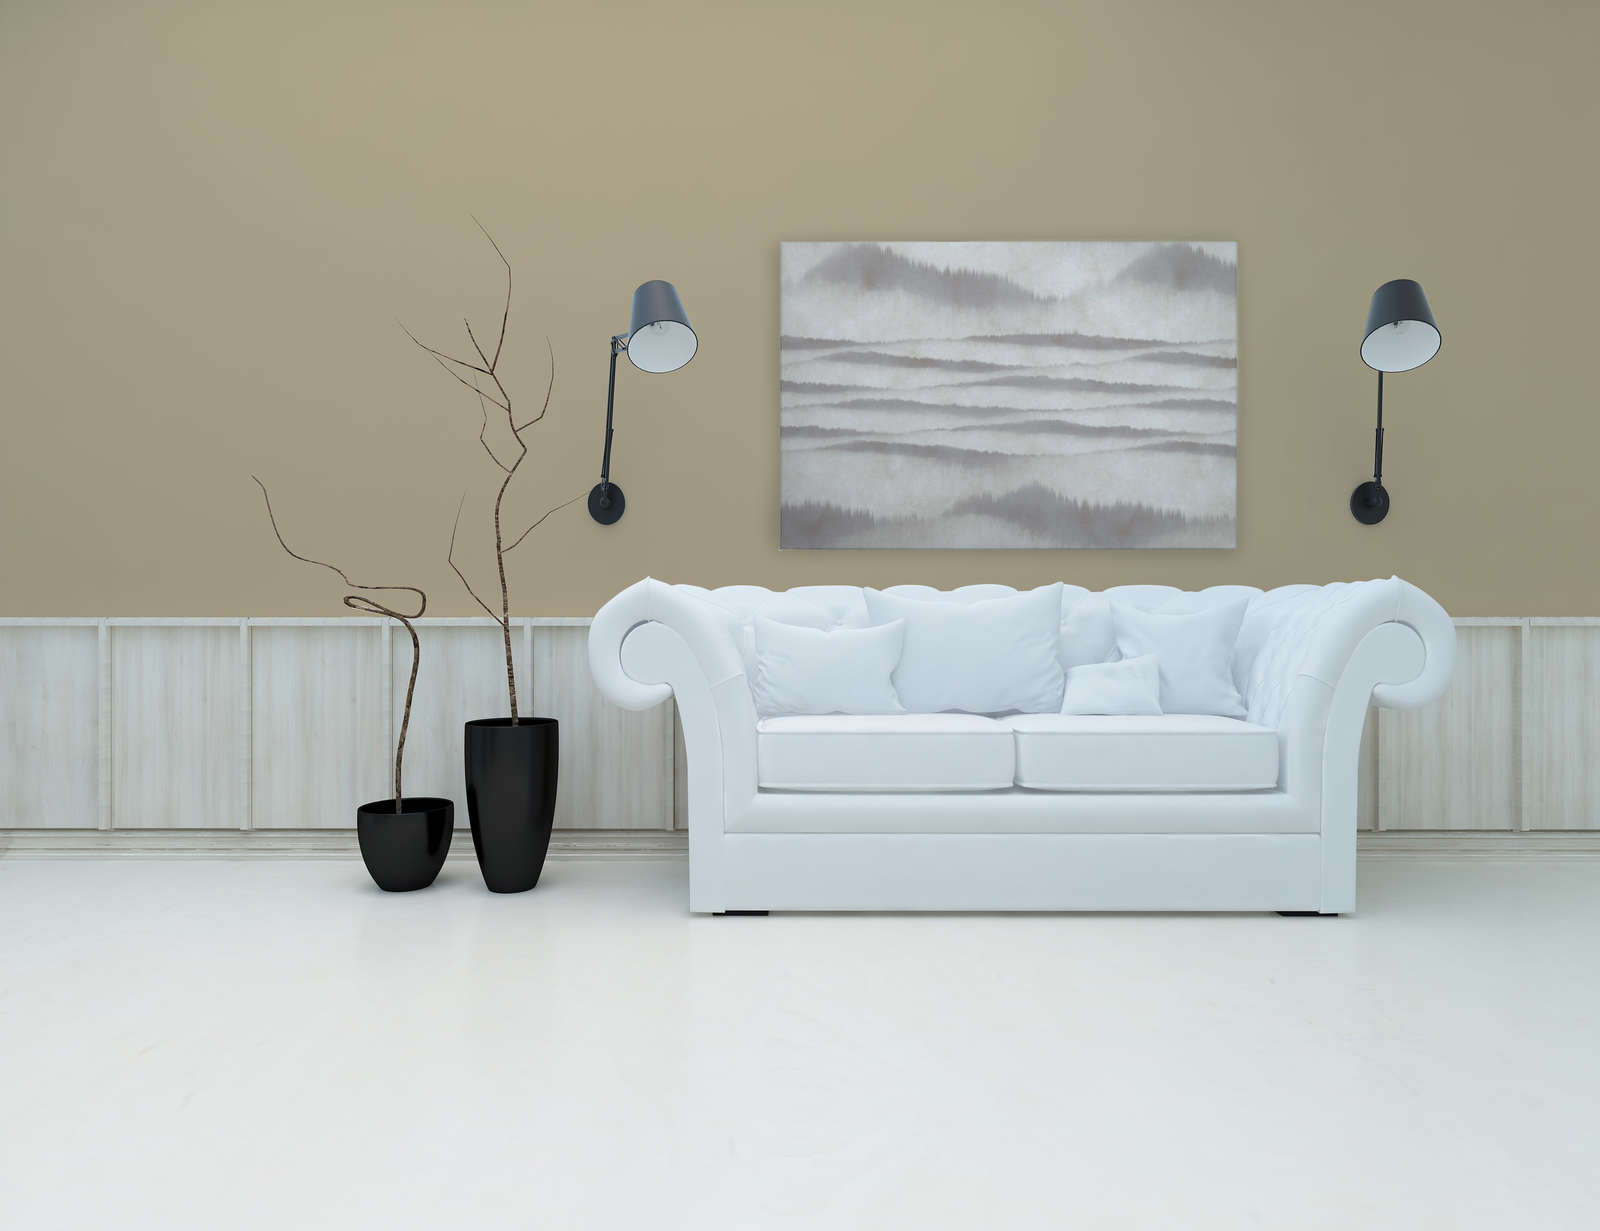             Tableau toile motif abstrait vagues | blanc, gris - 1,20 m x 0,80 m
        